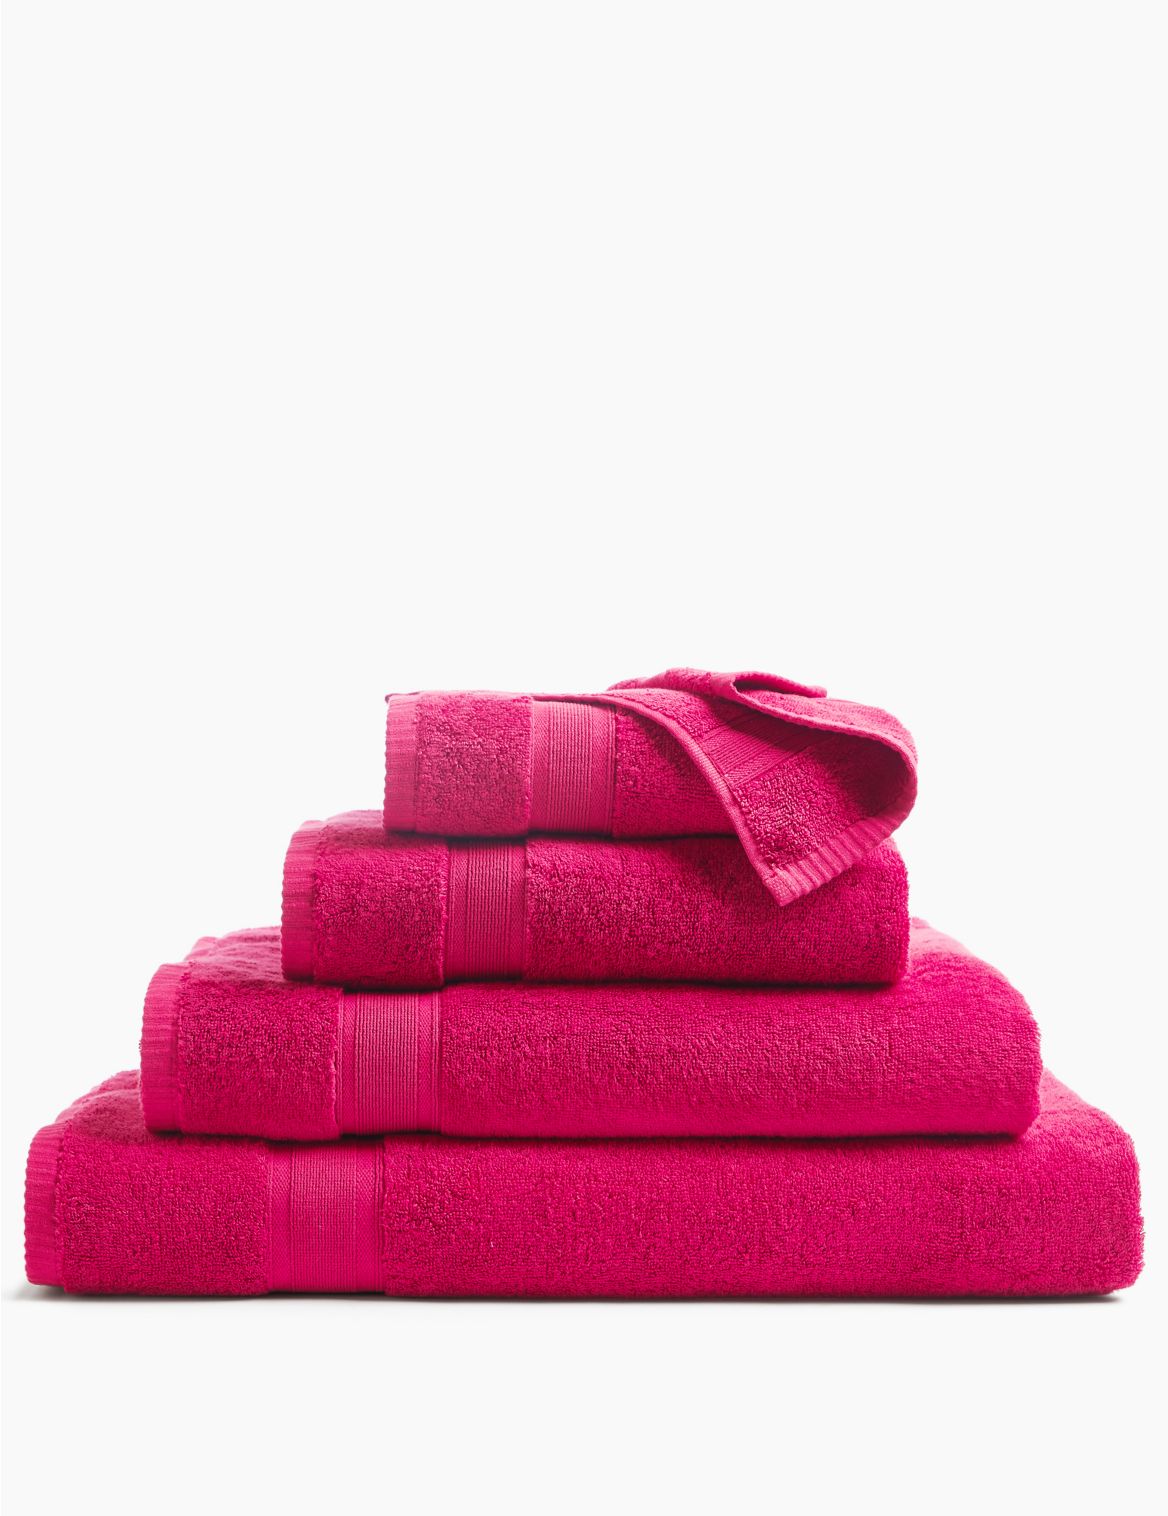 Super Soft Pure Cotton Towel pink